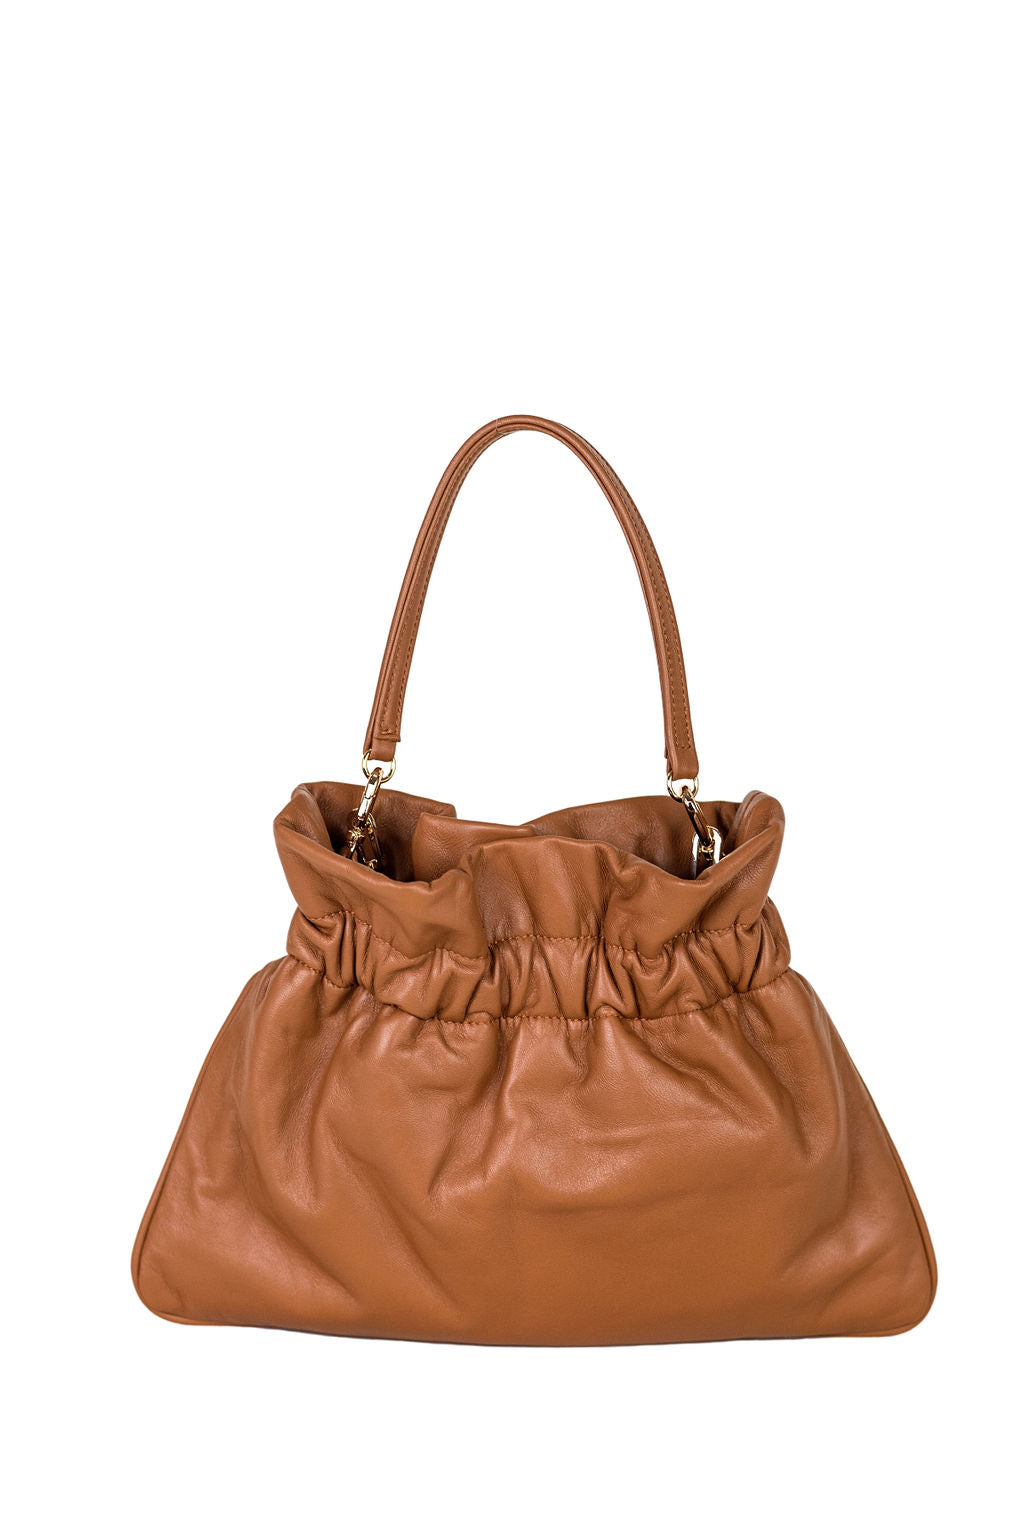 Parker- Camel Leather Bag